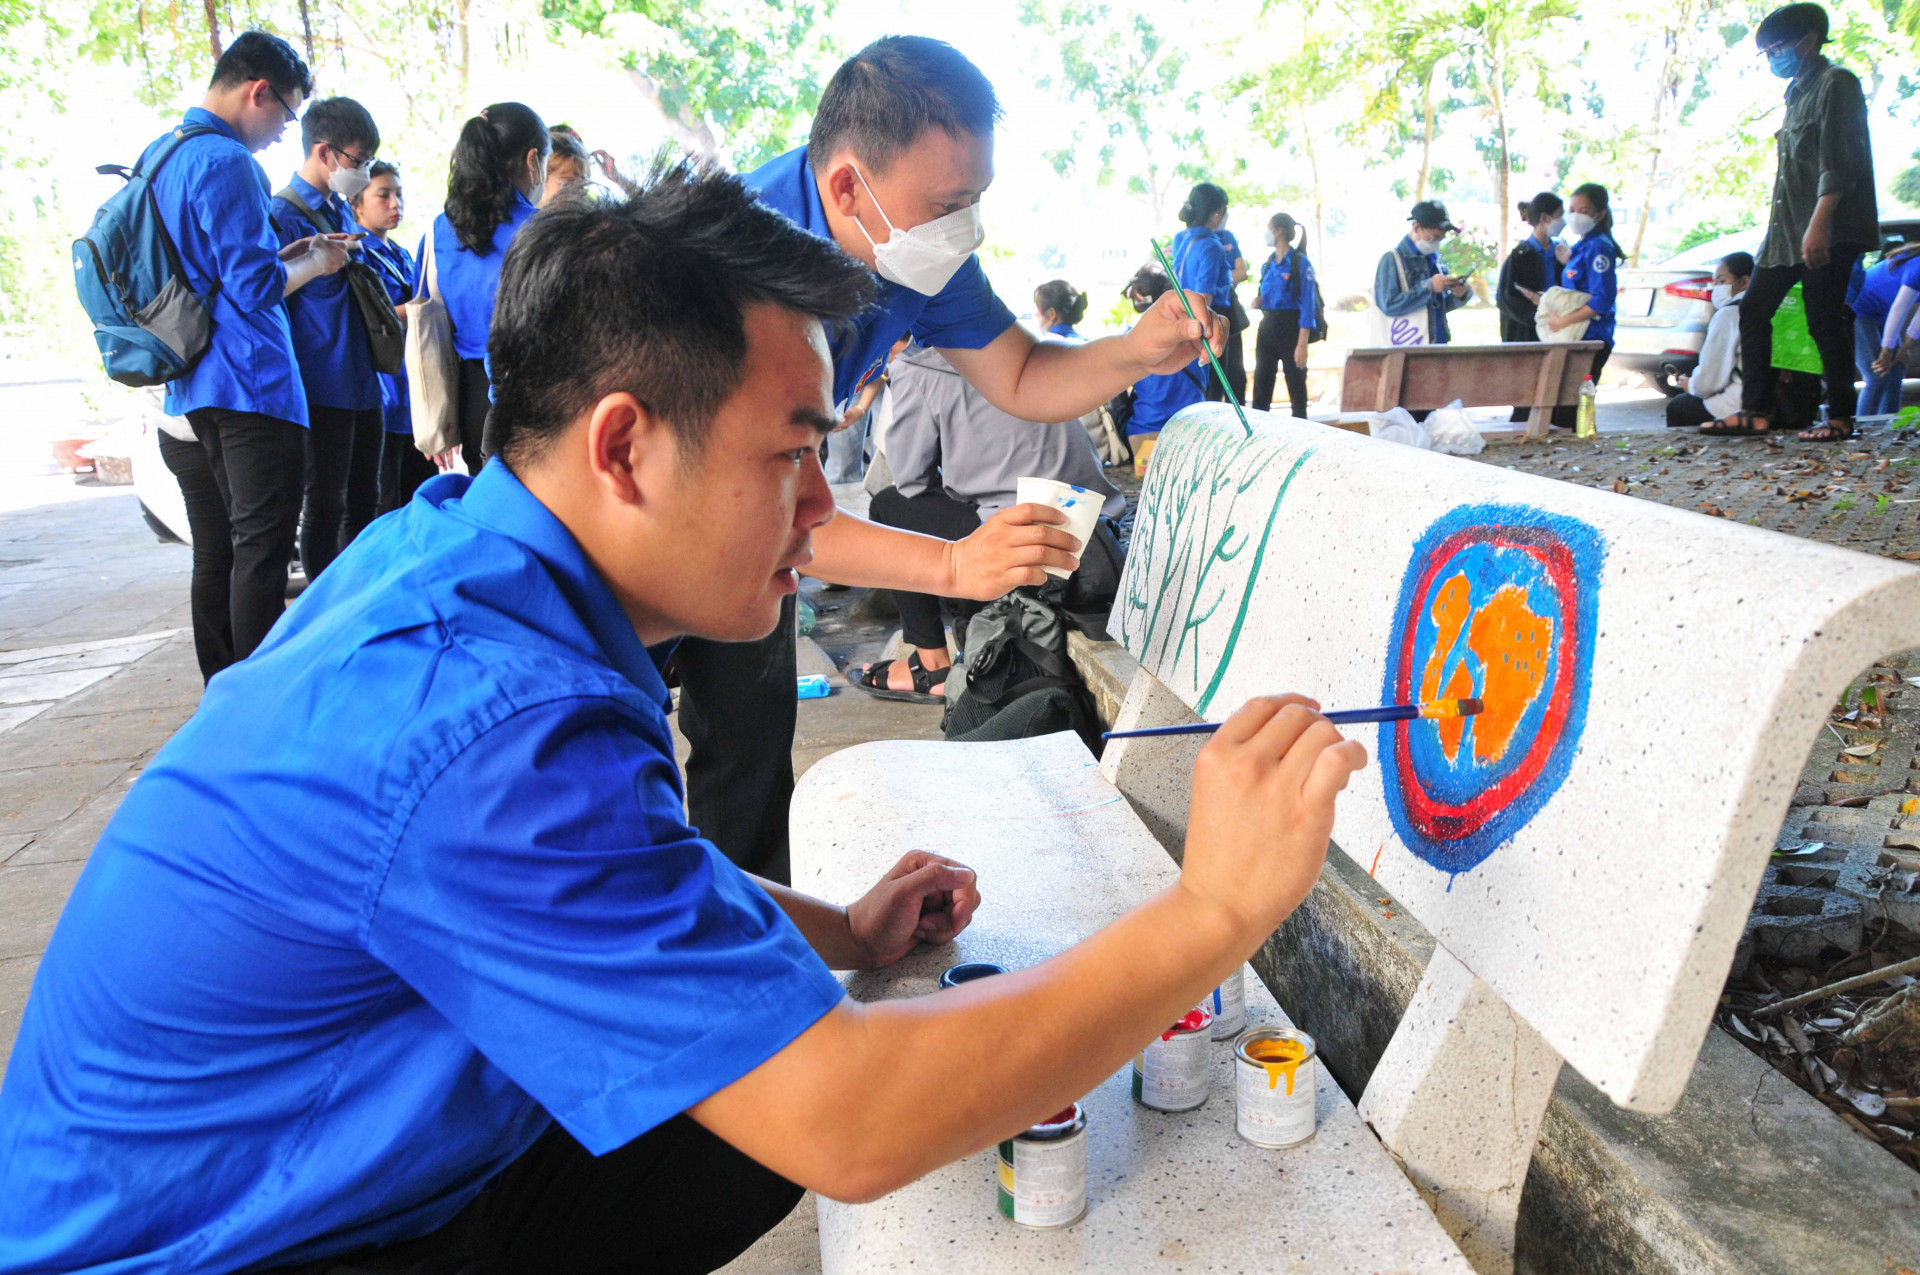 Hoạt động vẽ trang trí ghế đá trong khuôn viên Trường Đại học Nha Trang